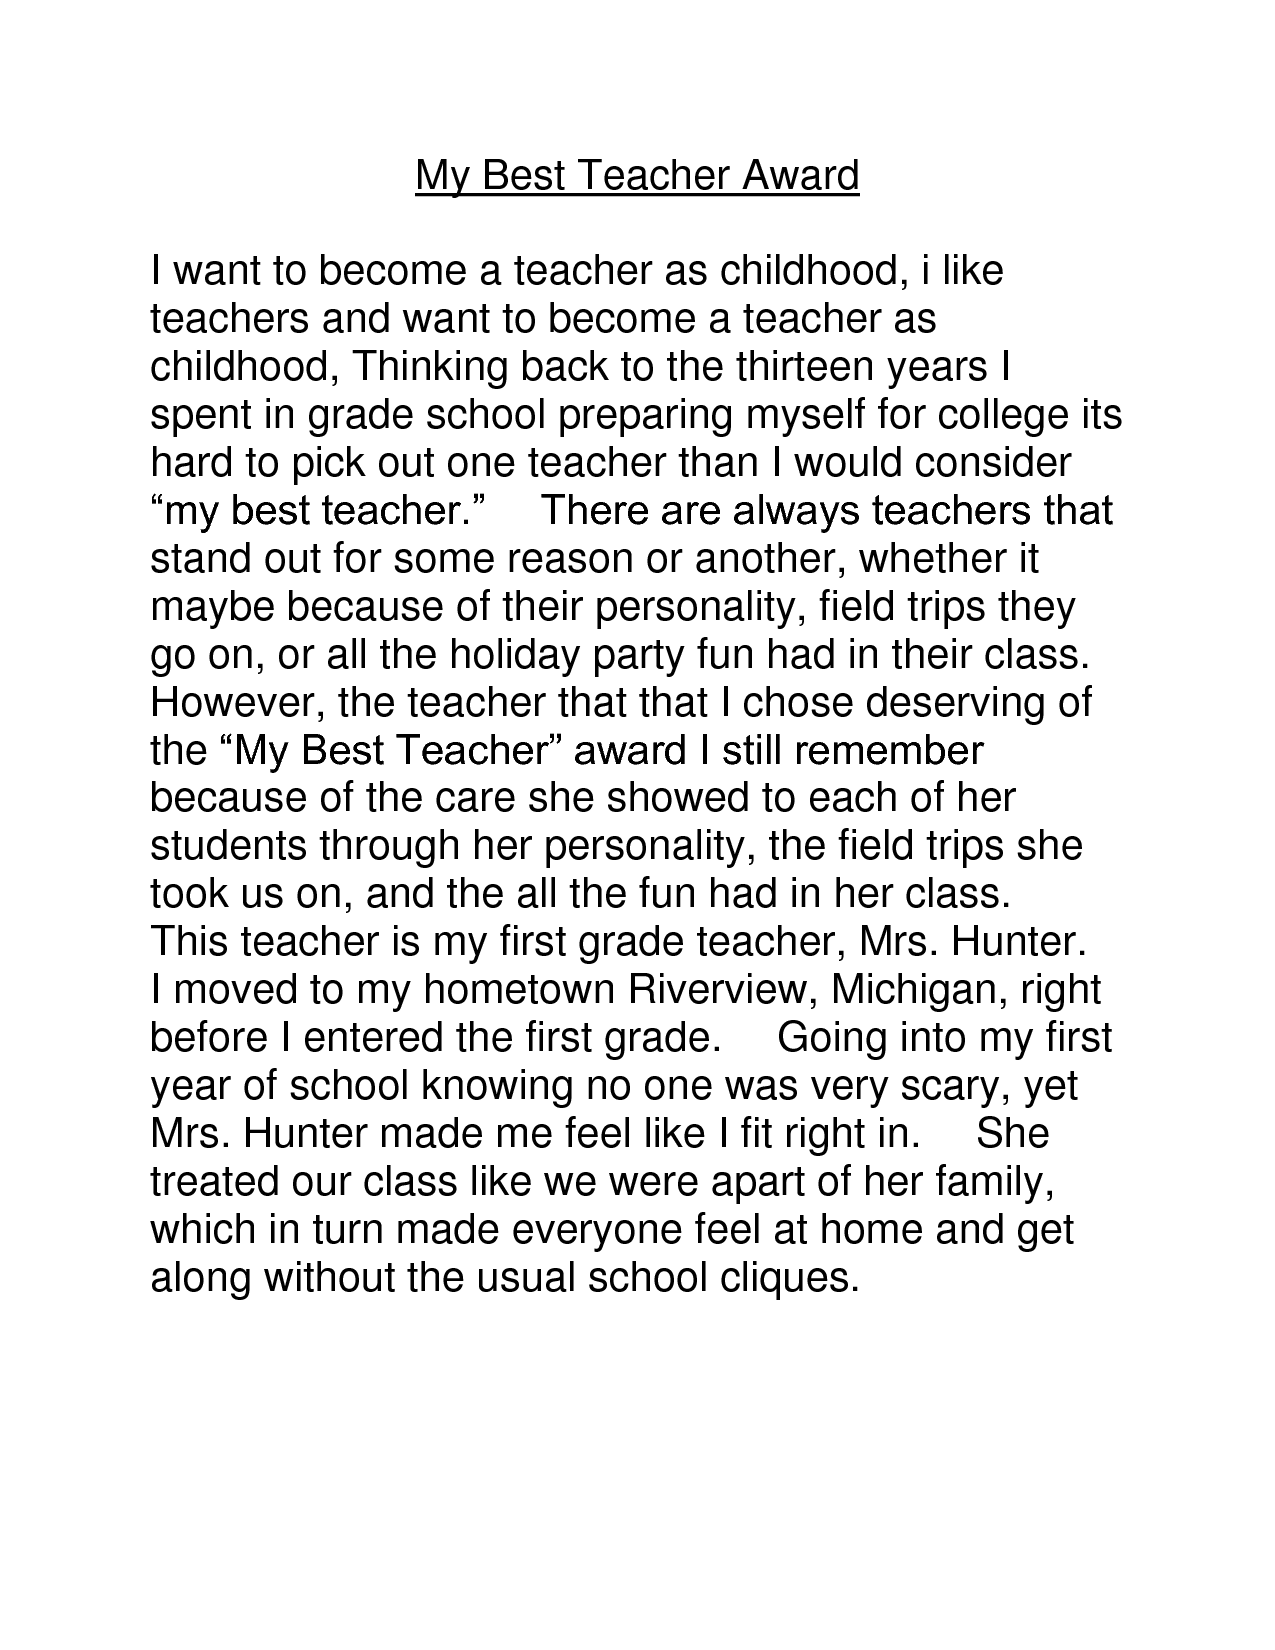 Essay about a teacher